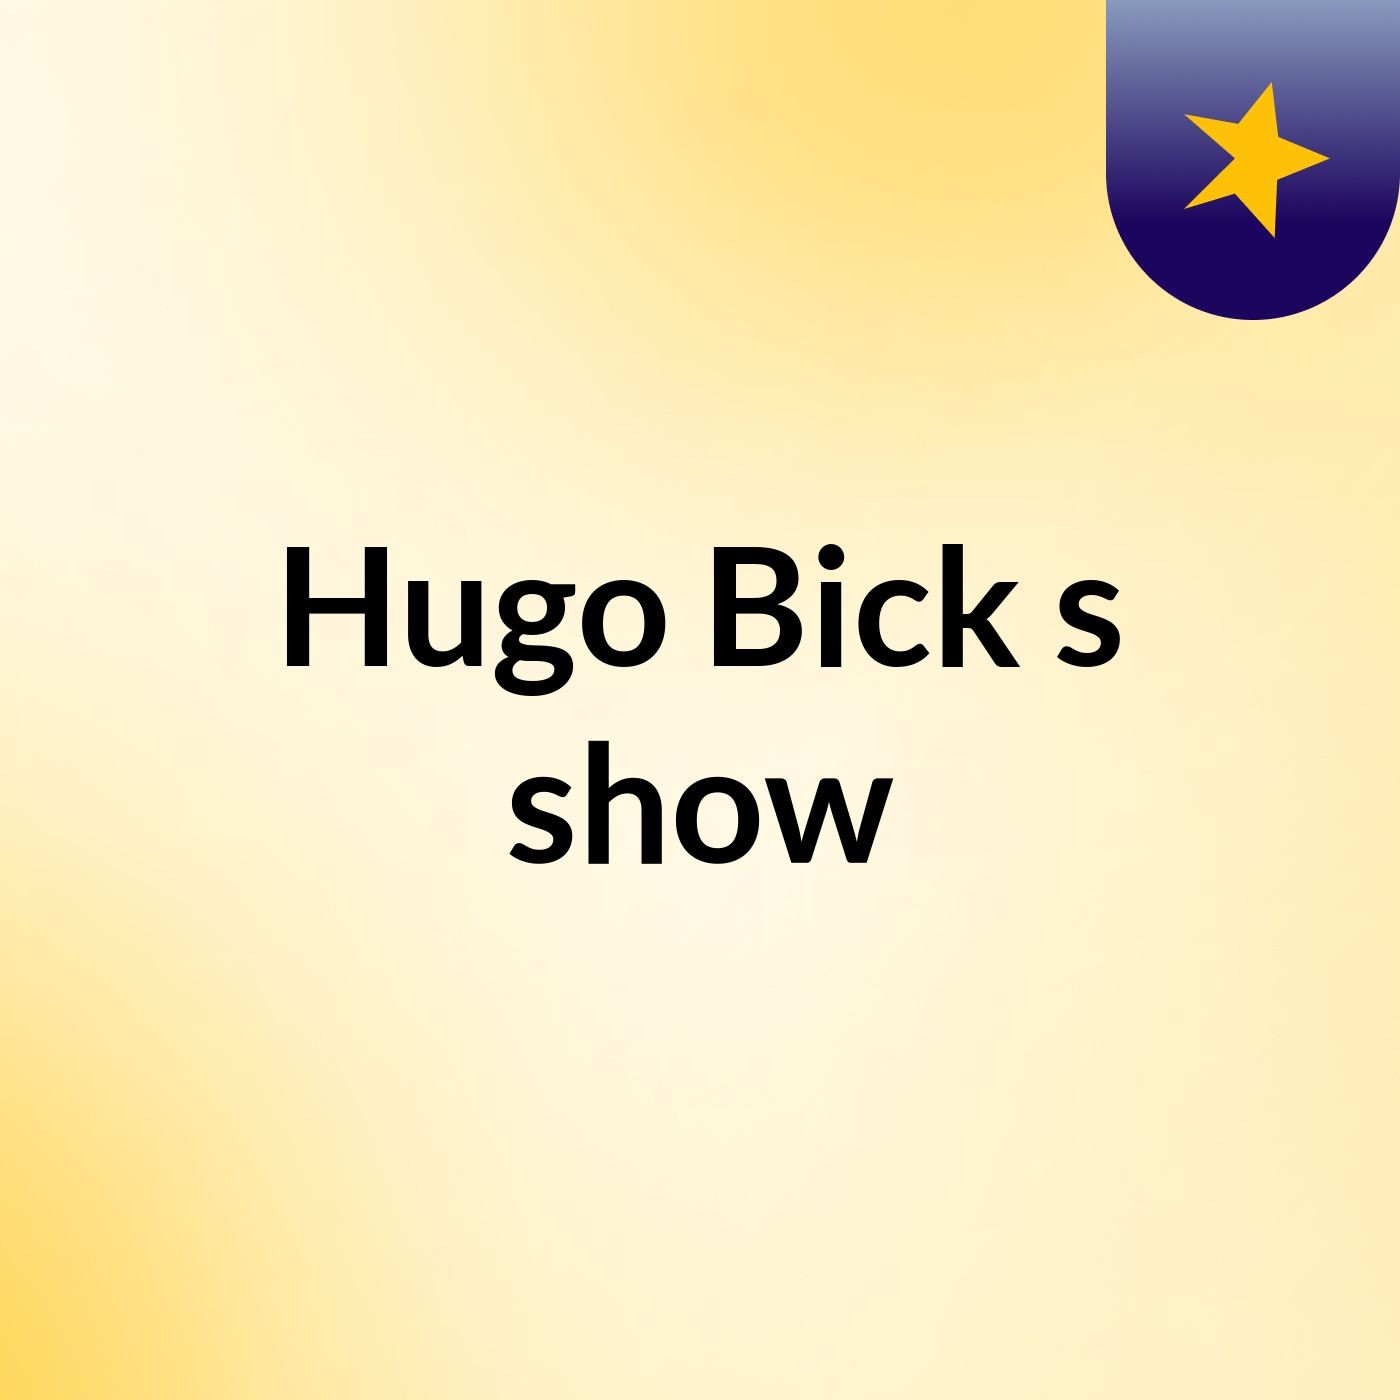 Hugo Bick's show